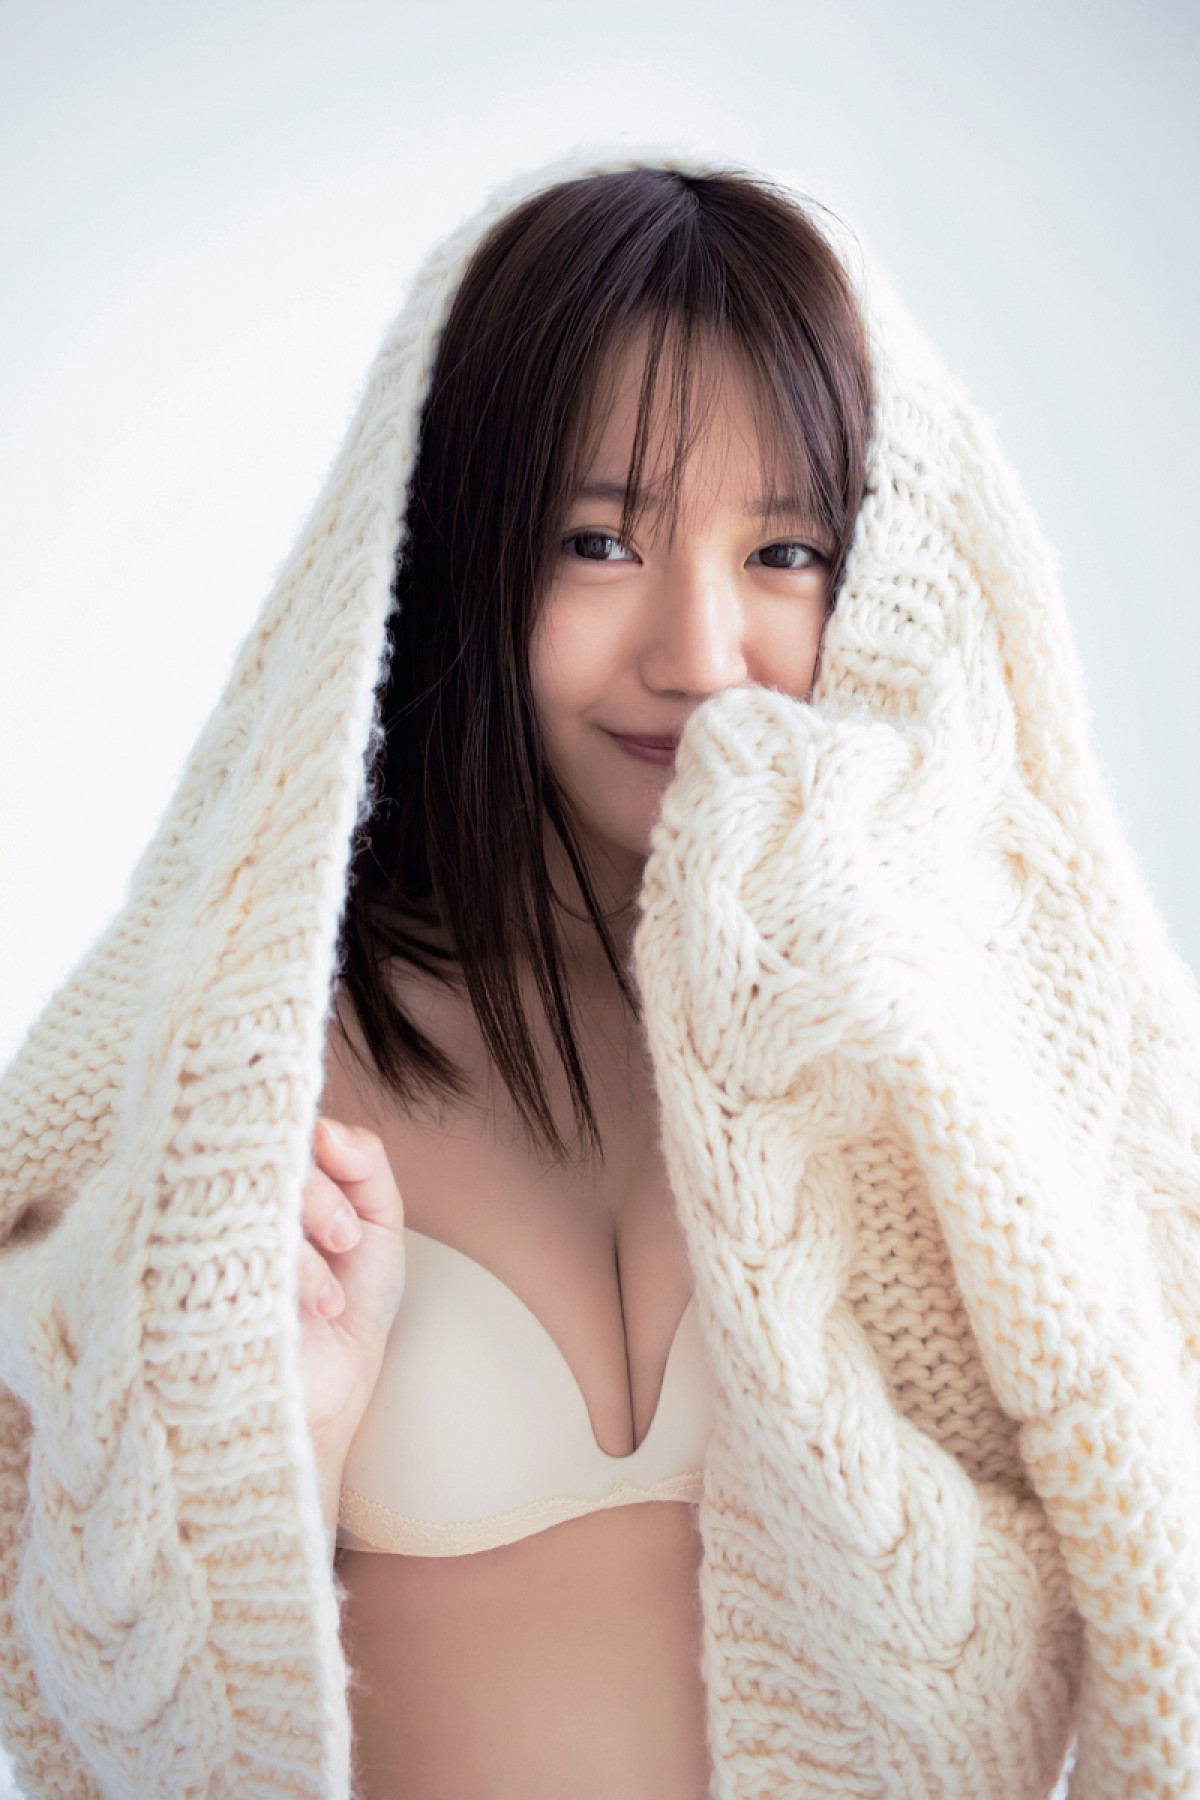 『けもフレ』声優・尾崎由香、2年ぶり写真集で初の下着姿に挑戦